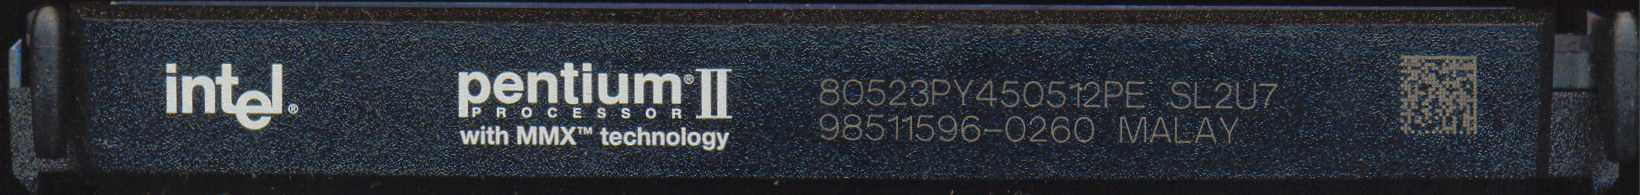 Intel PII 80523PY450512PE SL2U7